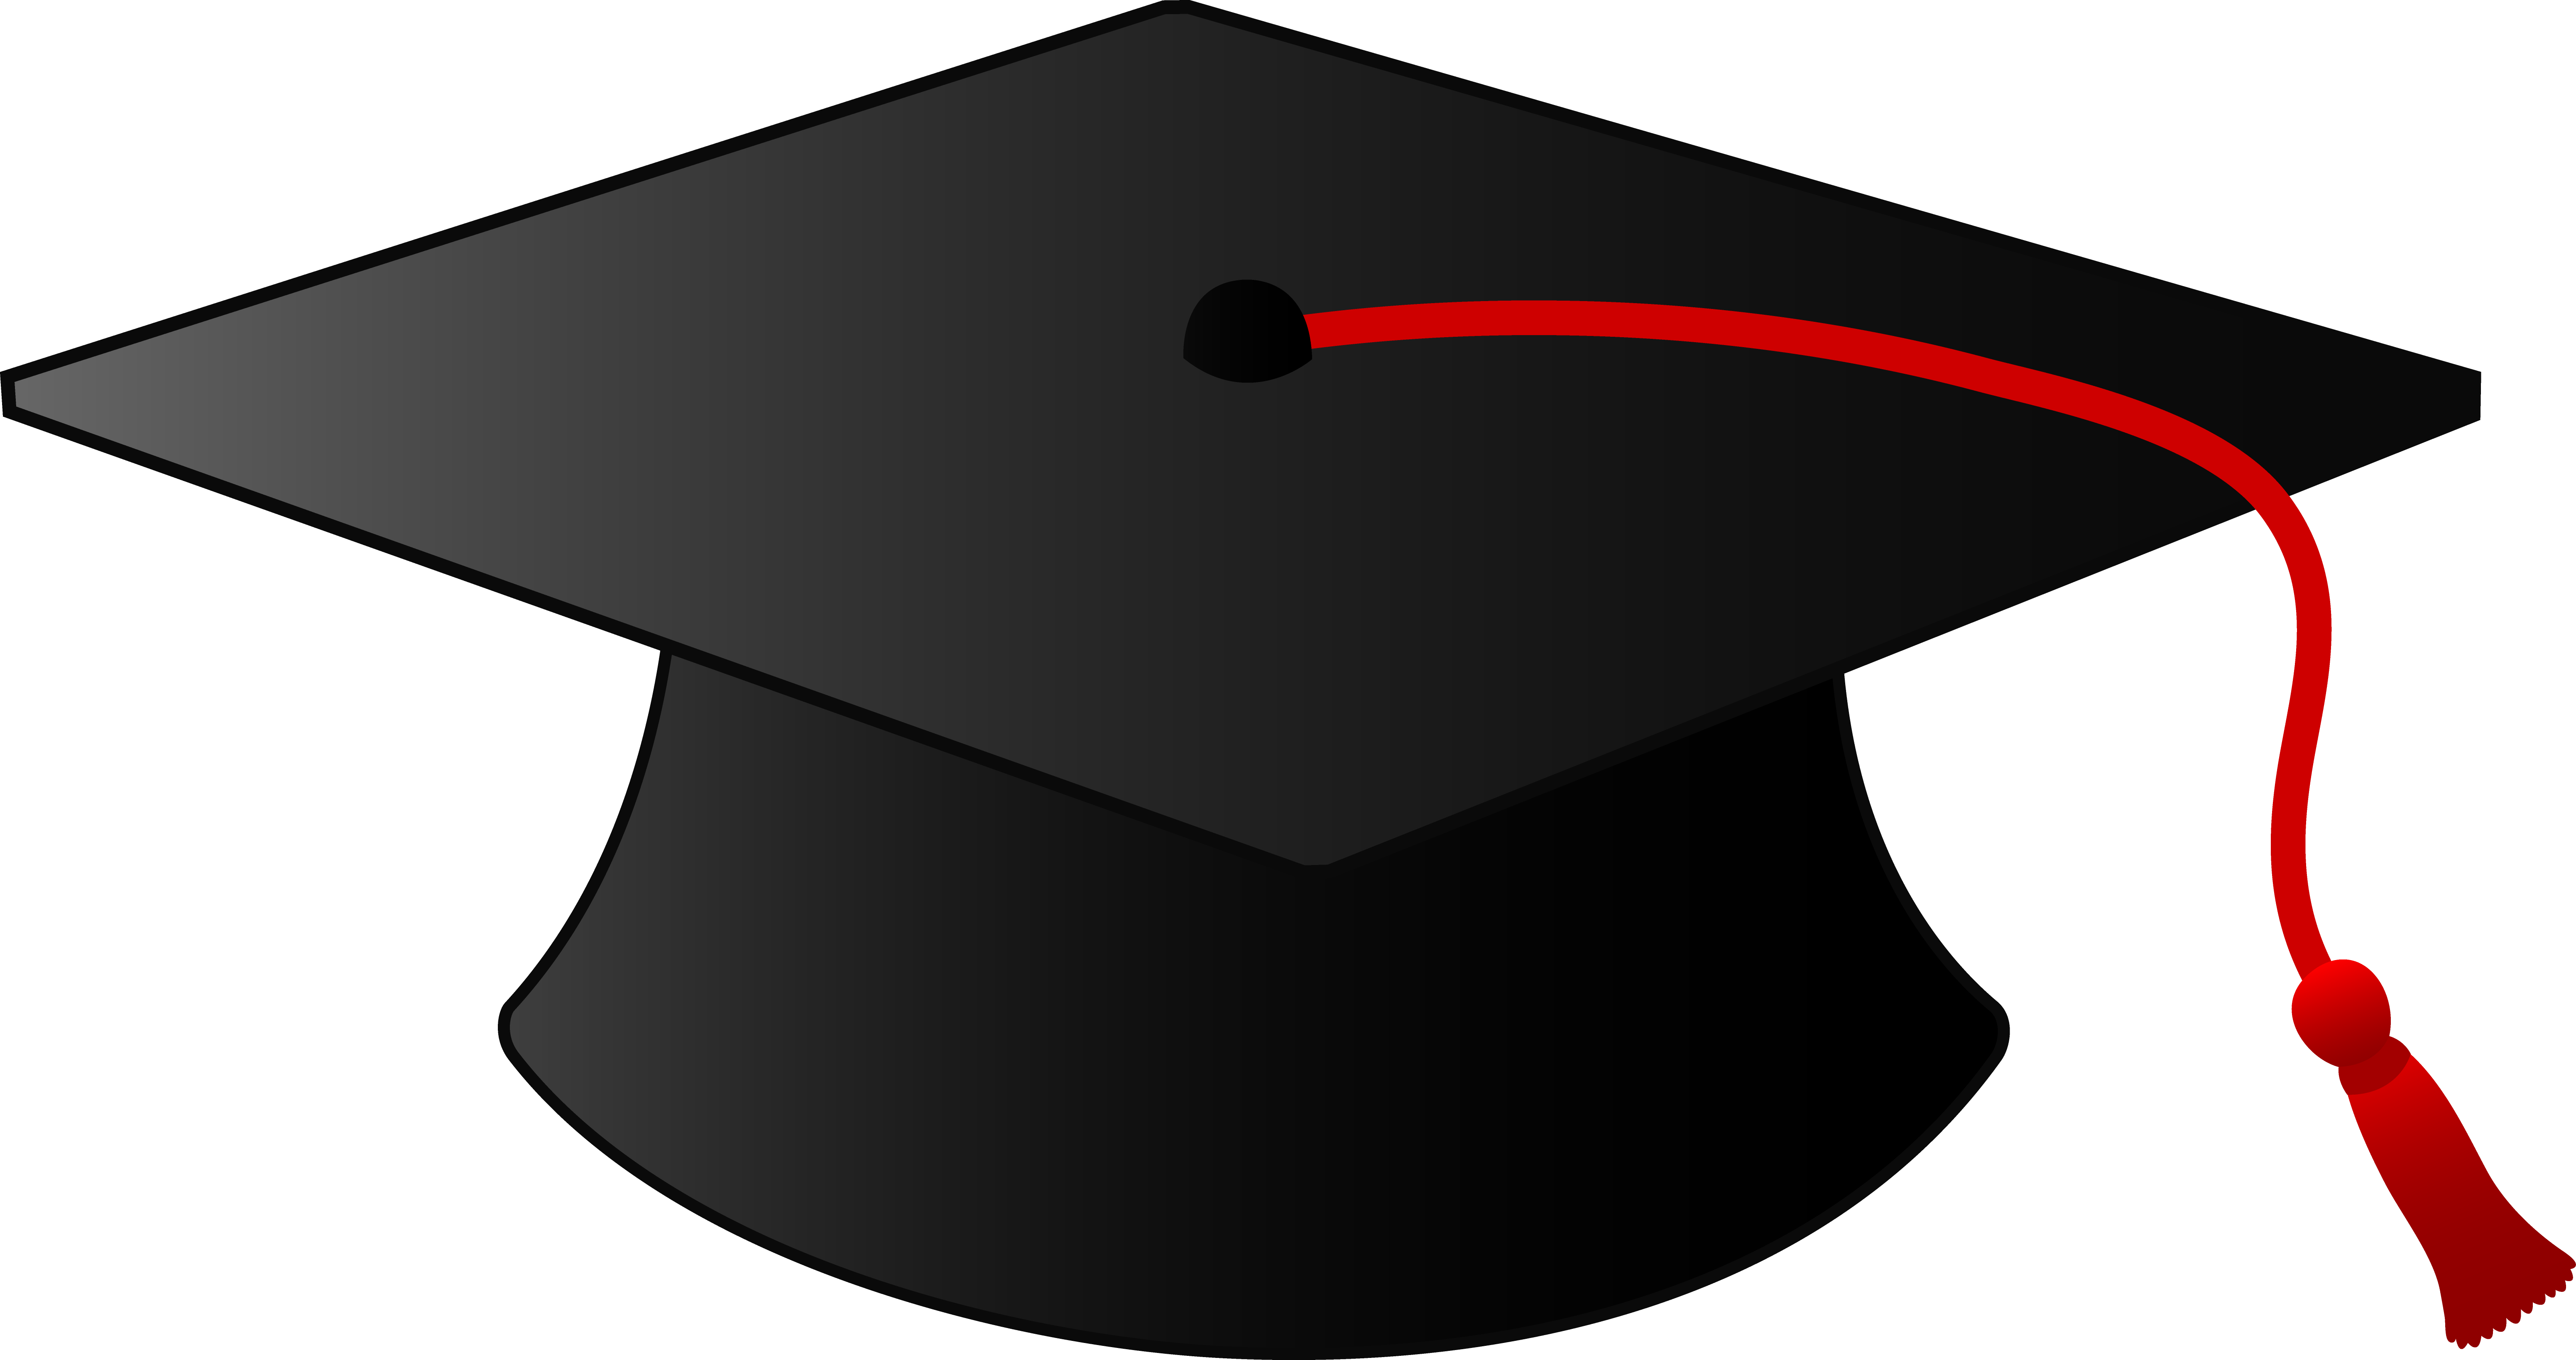 graduation hat clipart - photo #10